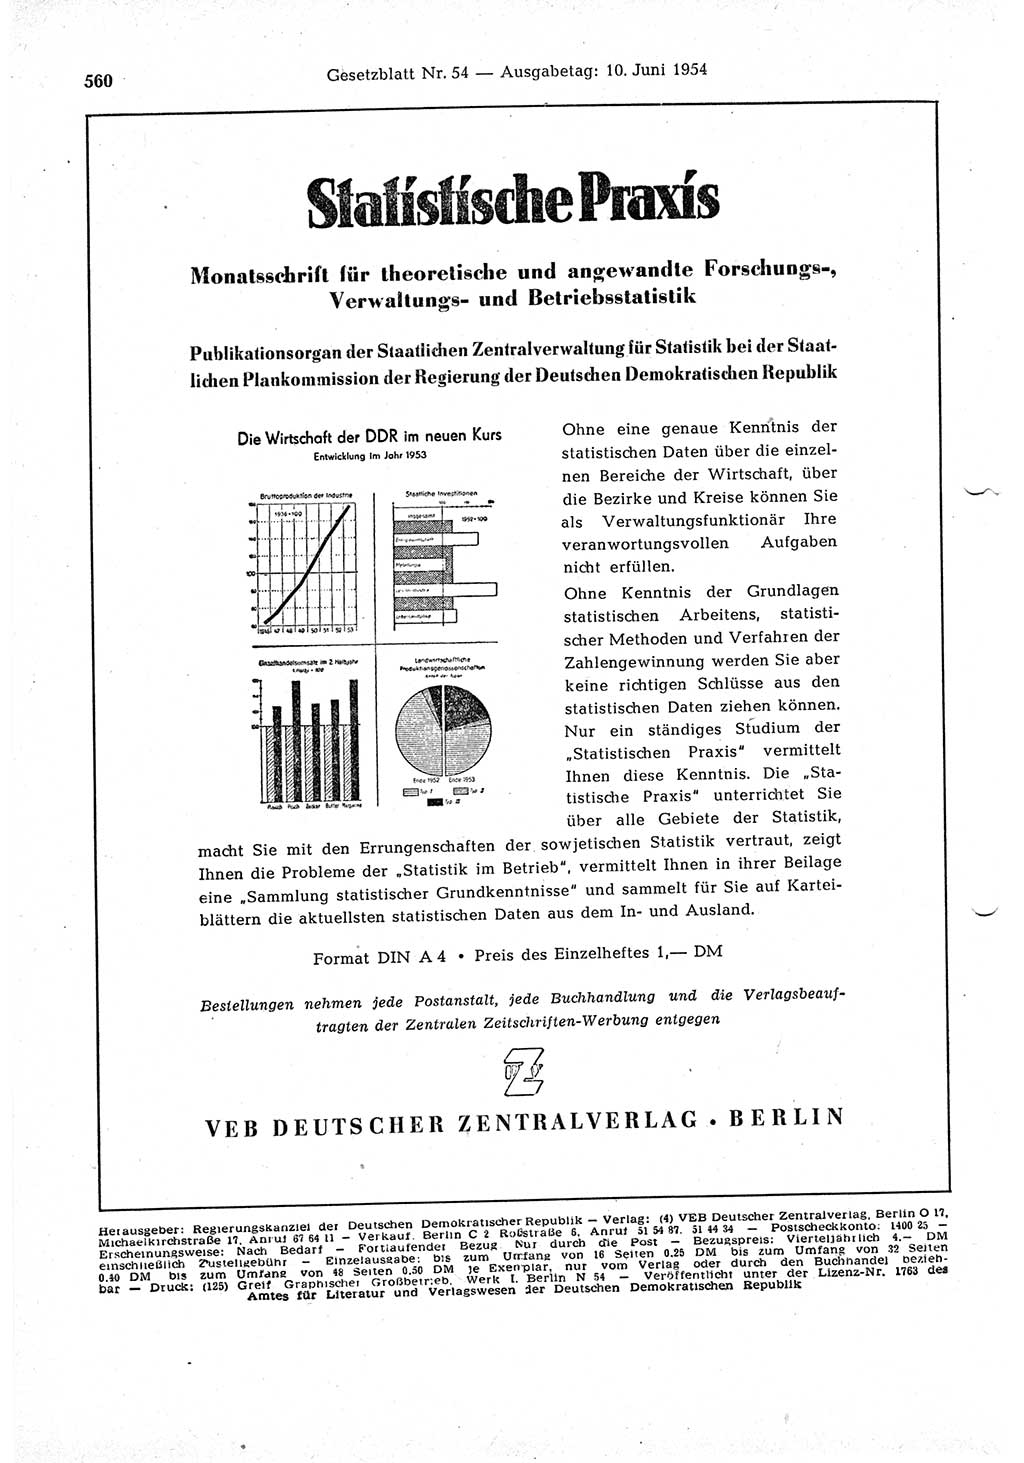 Gesetzblatt (GBl.) der Deutschen Demokratischen Republik (DDR) 1954, Seite 560 (GBl. DDR 1954, S. 560)